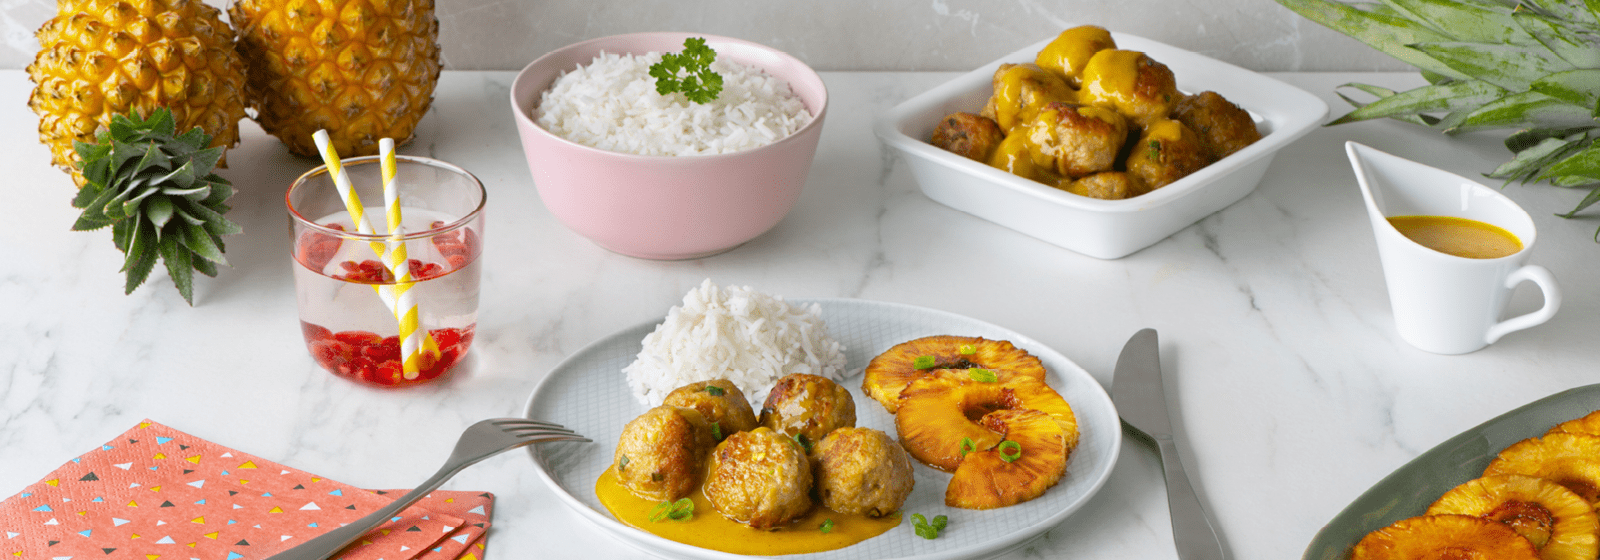 bonap-recept-traditionele-keuken-gehaktballetjes-in-currysaus